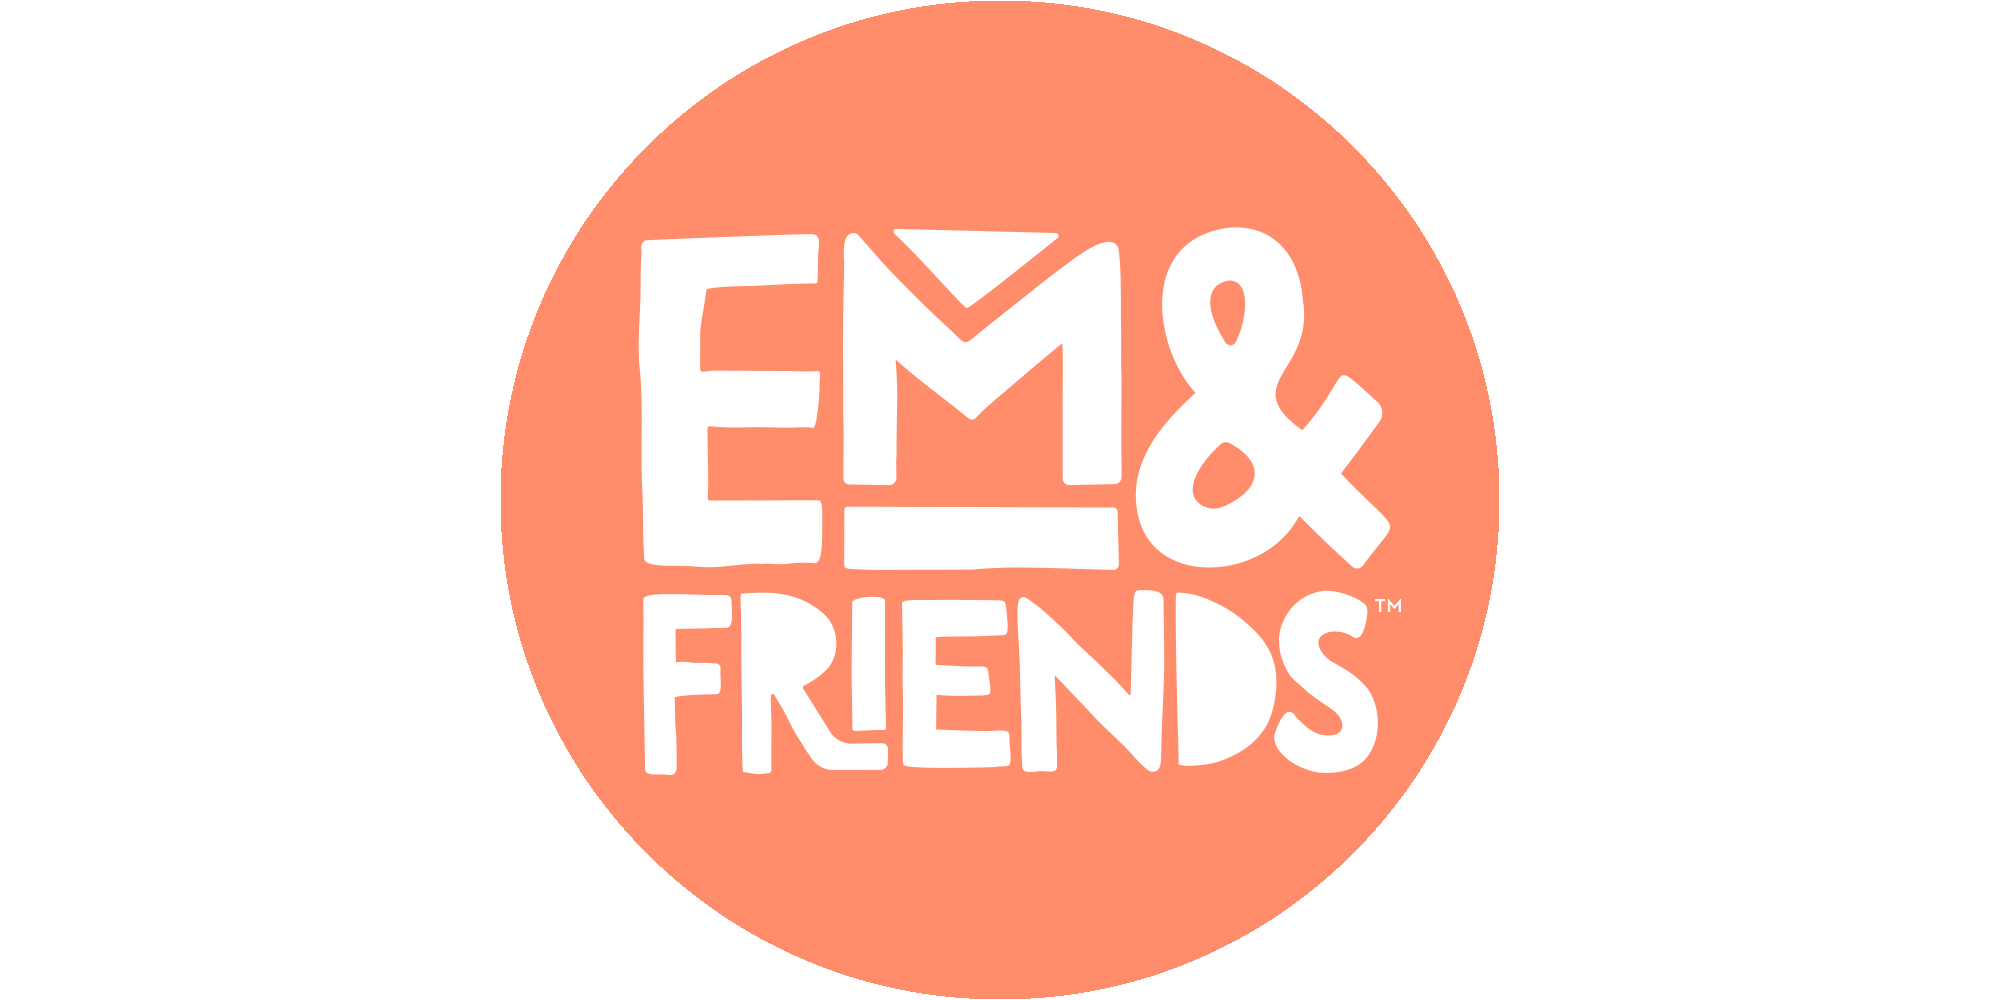 (c) Emandfriends.com